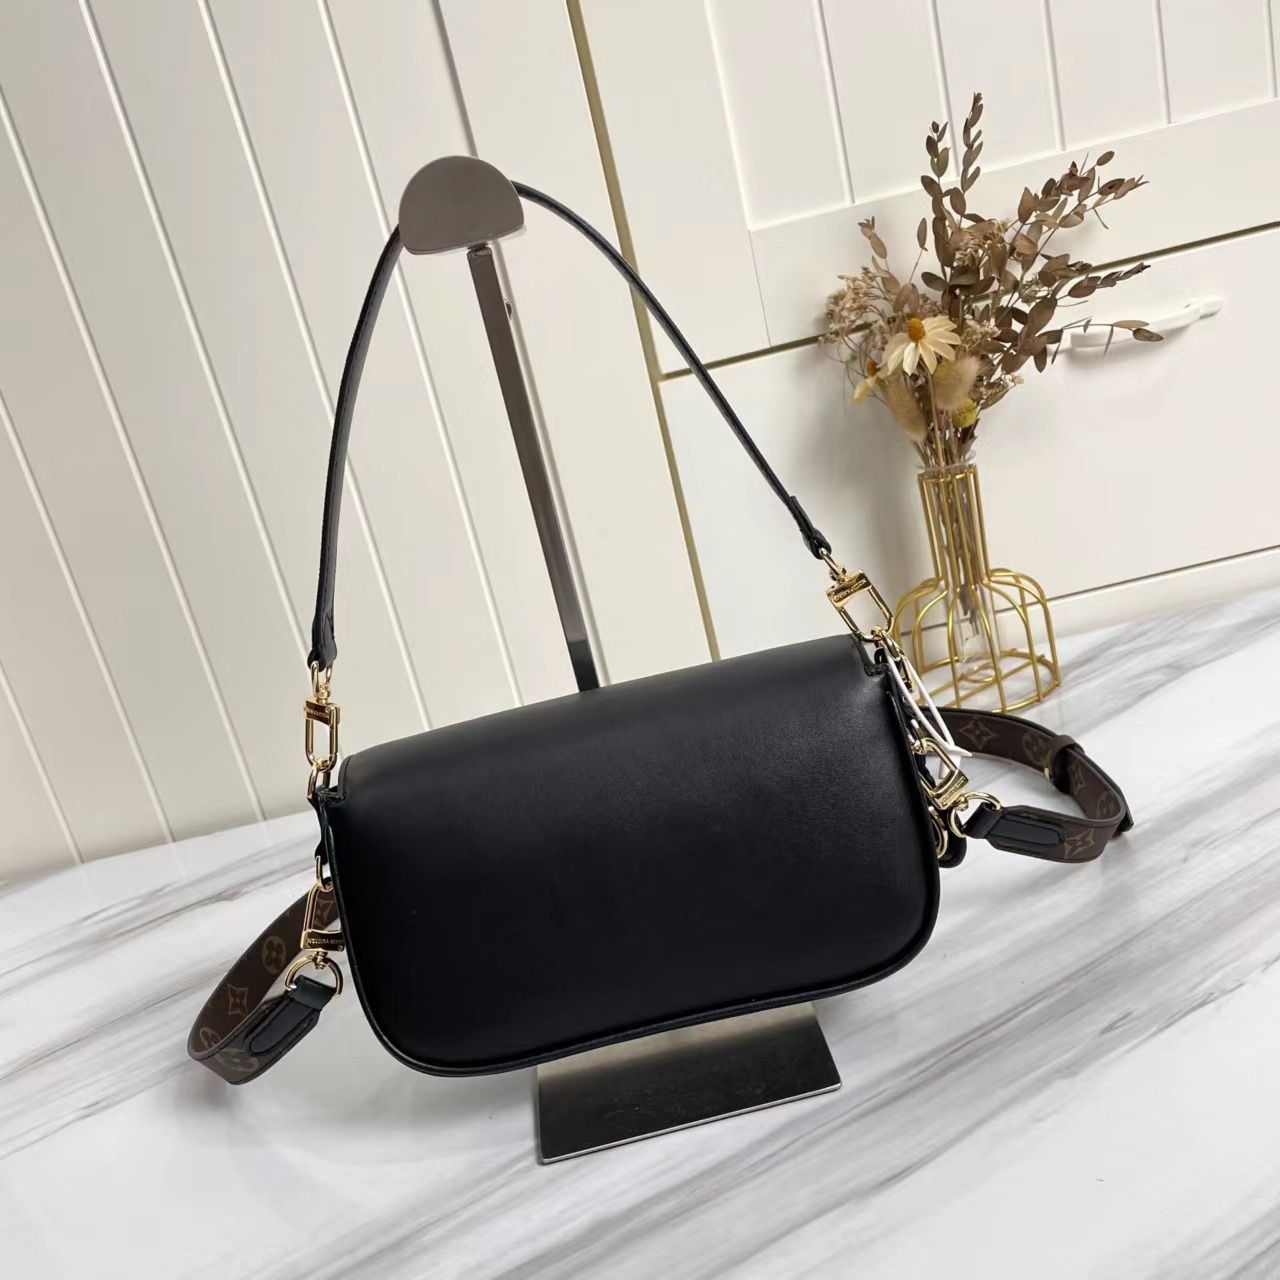 A bag Swing Fashion Leather 24 cm фото 5